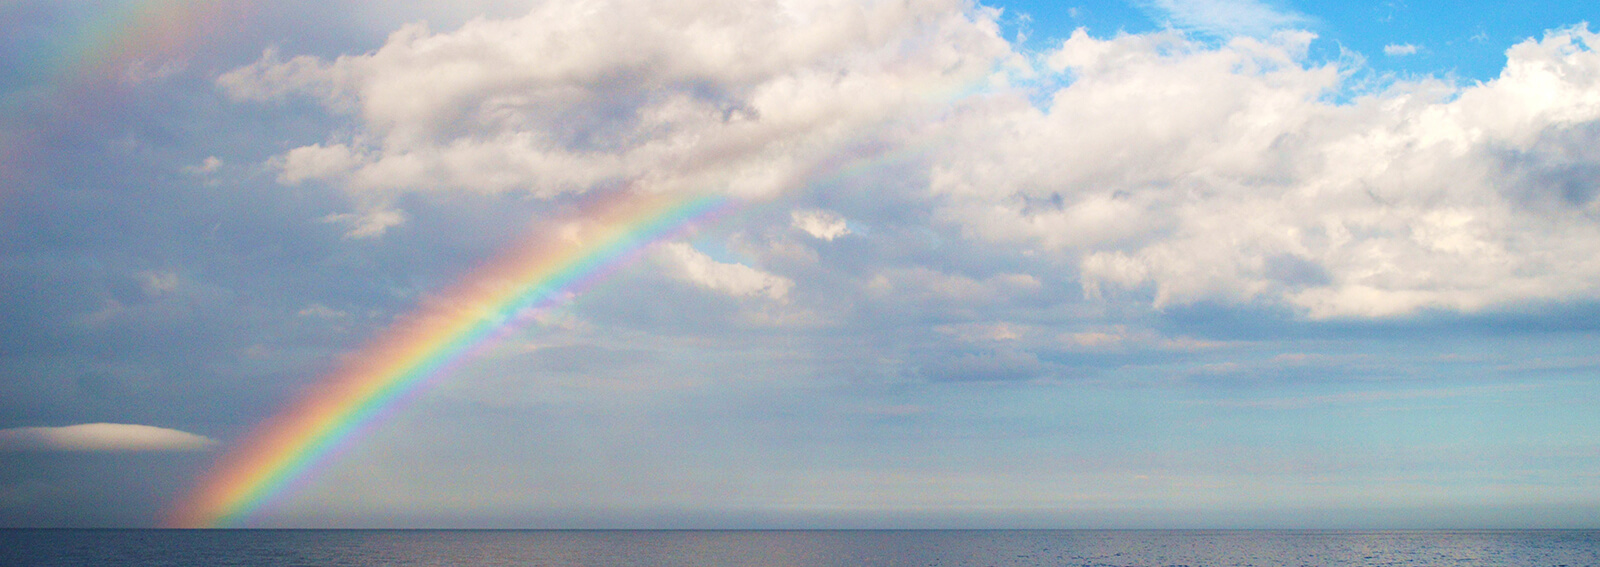 A rainbow extends over the ocean